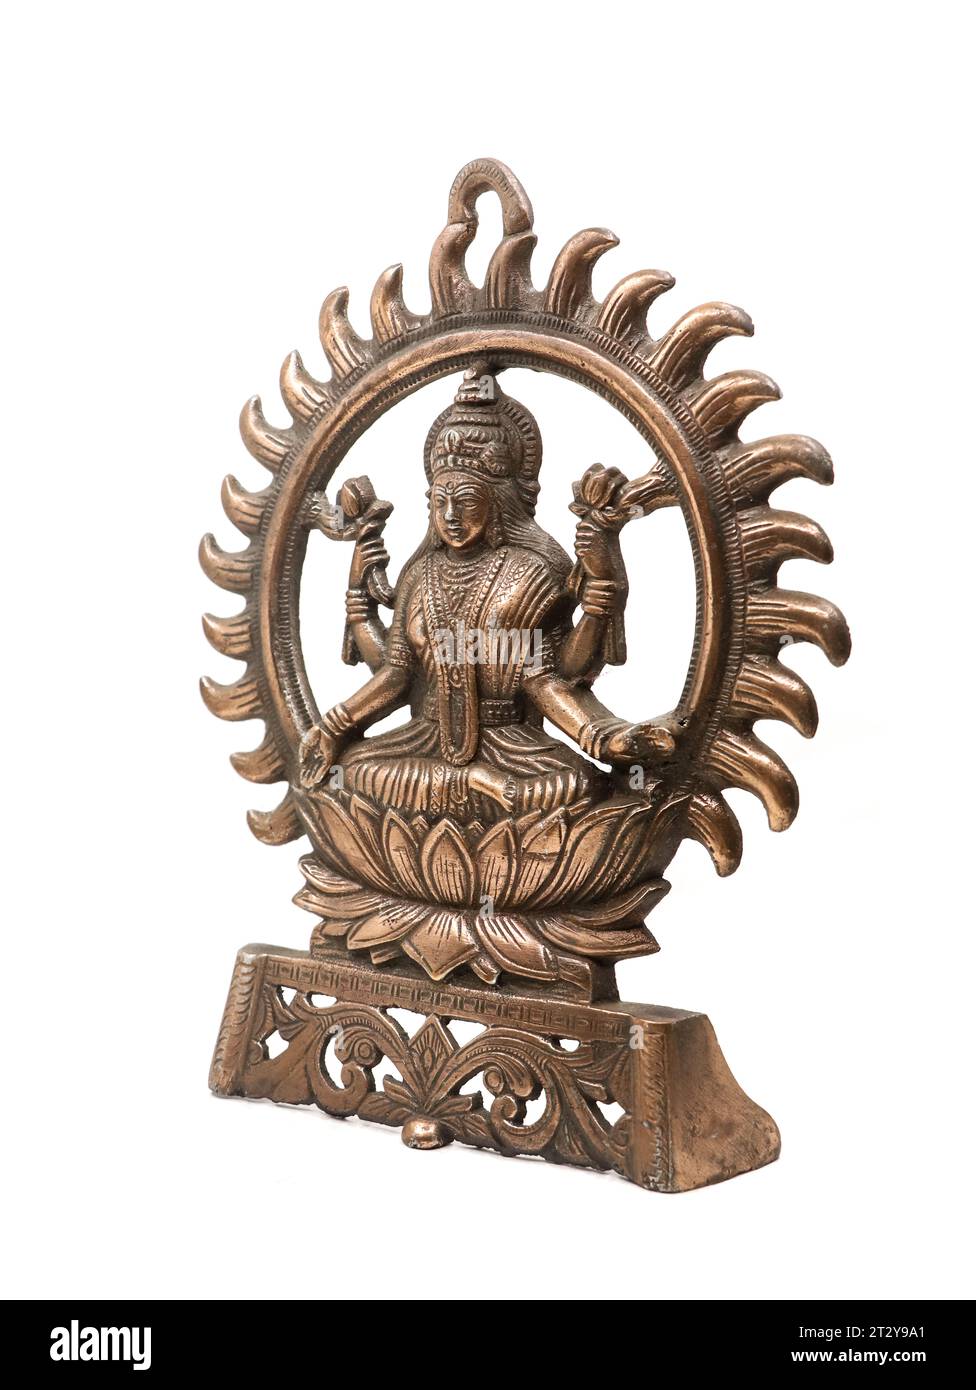 Kupferidol der Göttin lakshmi von hinduistischer Religion mit mehreren Armen, die in einer Lotusblume sitzen, umgeben von Sonnenstrahlen, isoliert Stockfoto